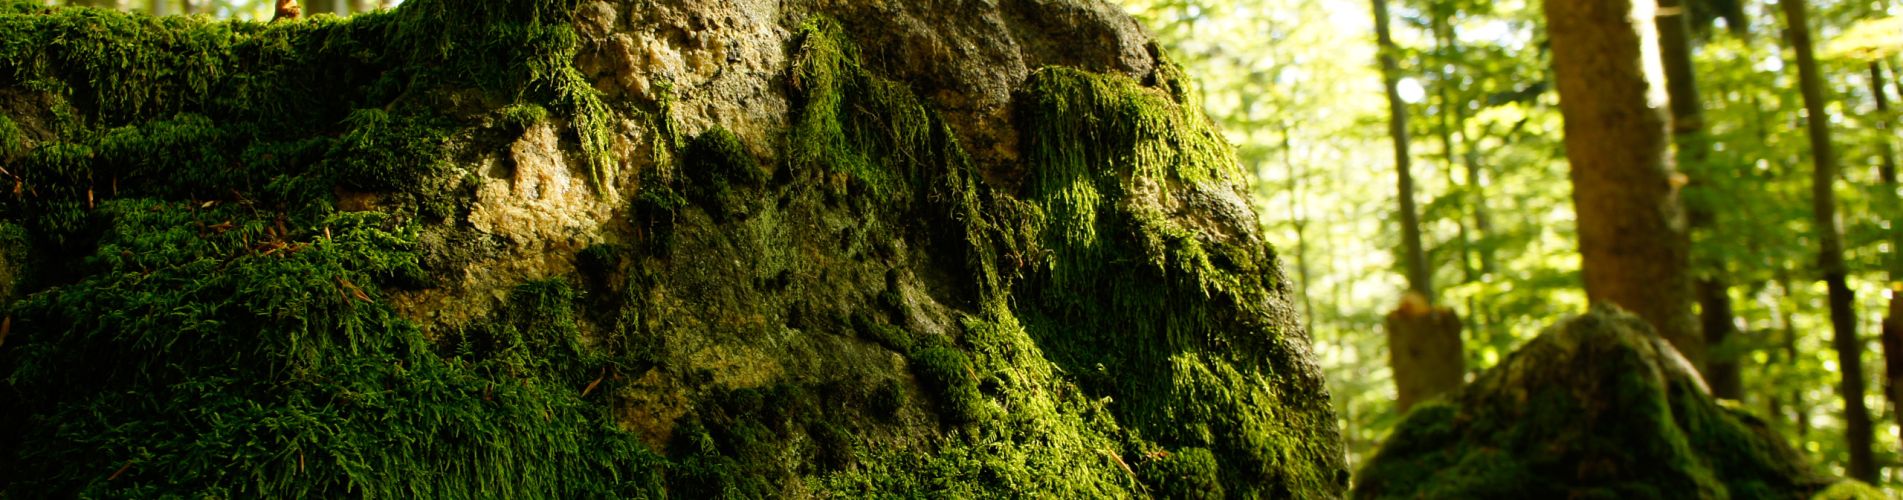 Bayerischer Wald: Impression vermooster Stein